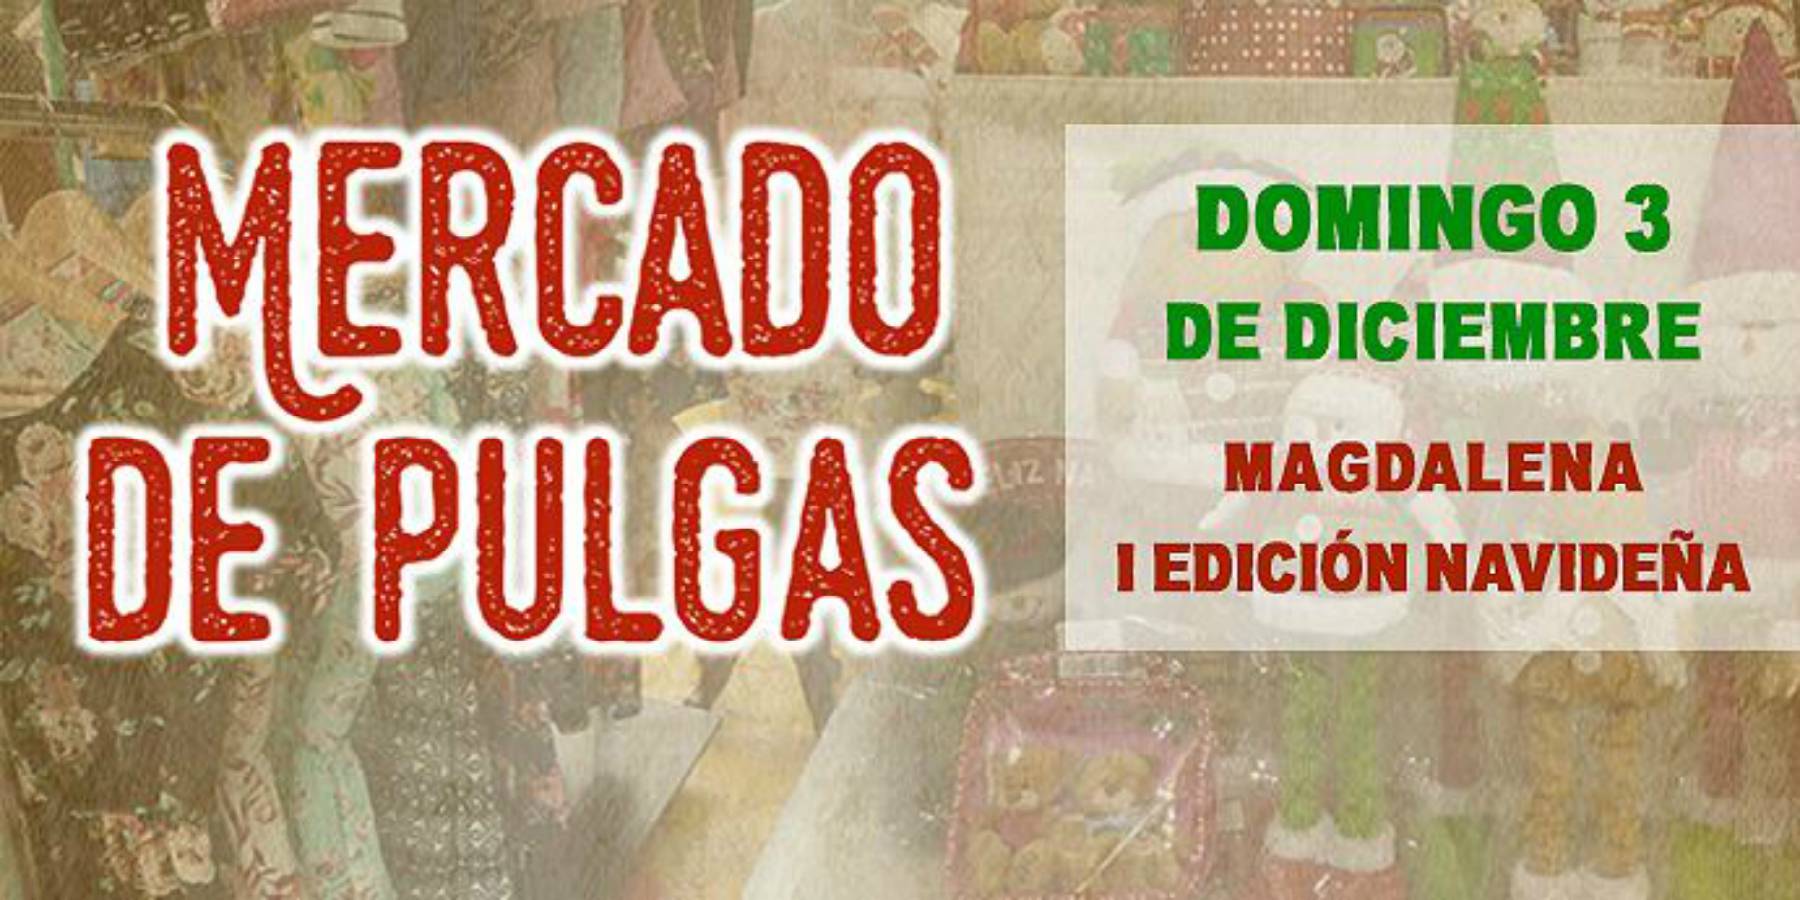 Mercado de Pulgas | Magdalena I Edición Navideña